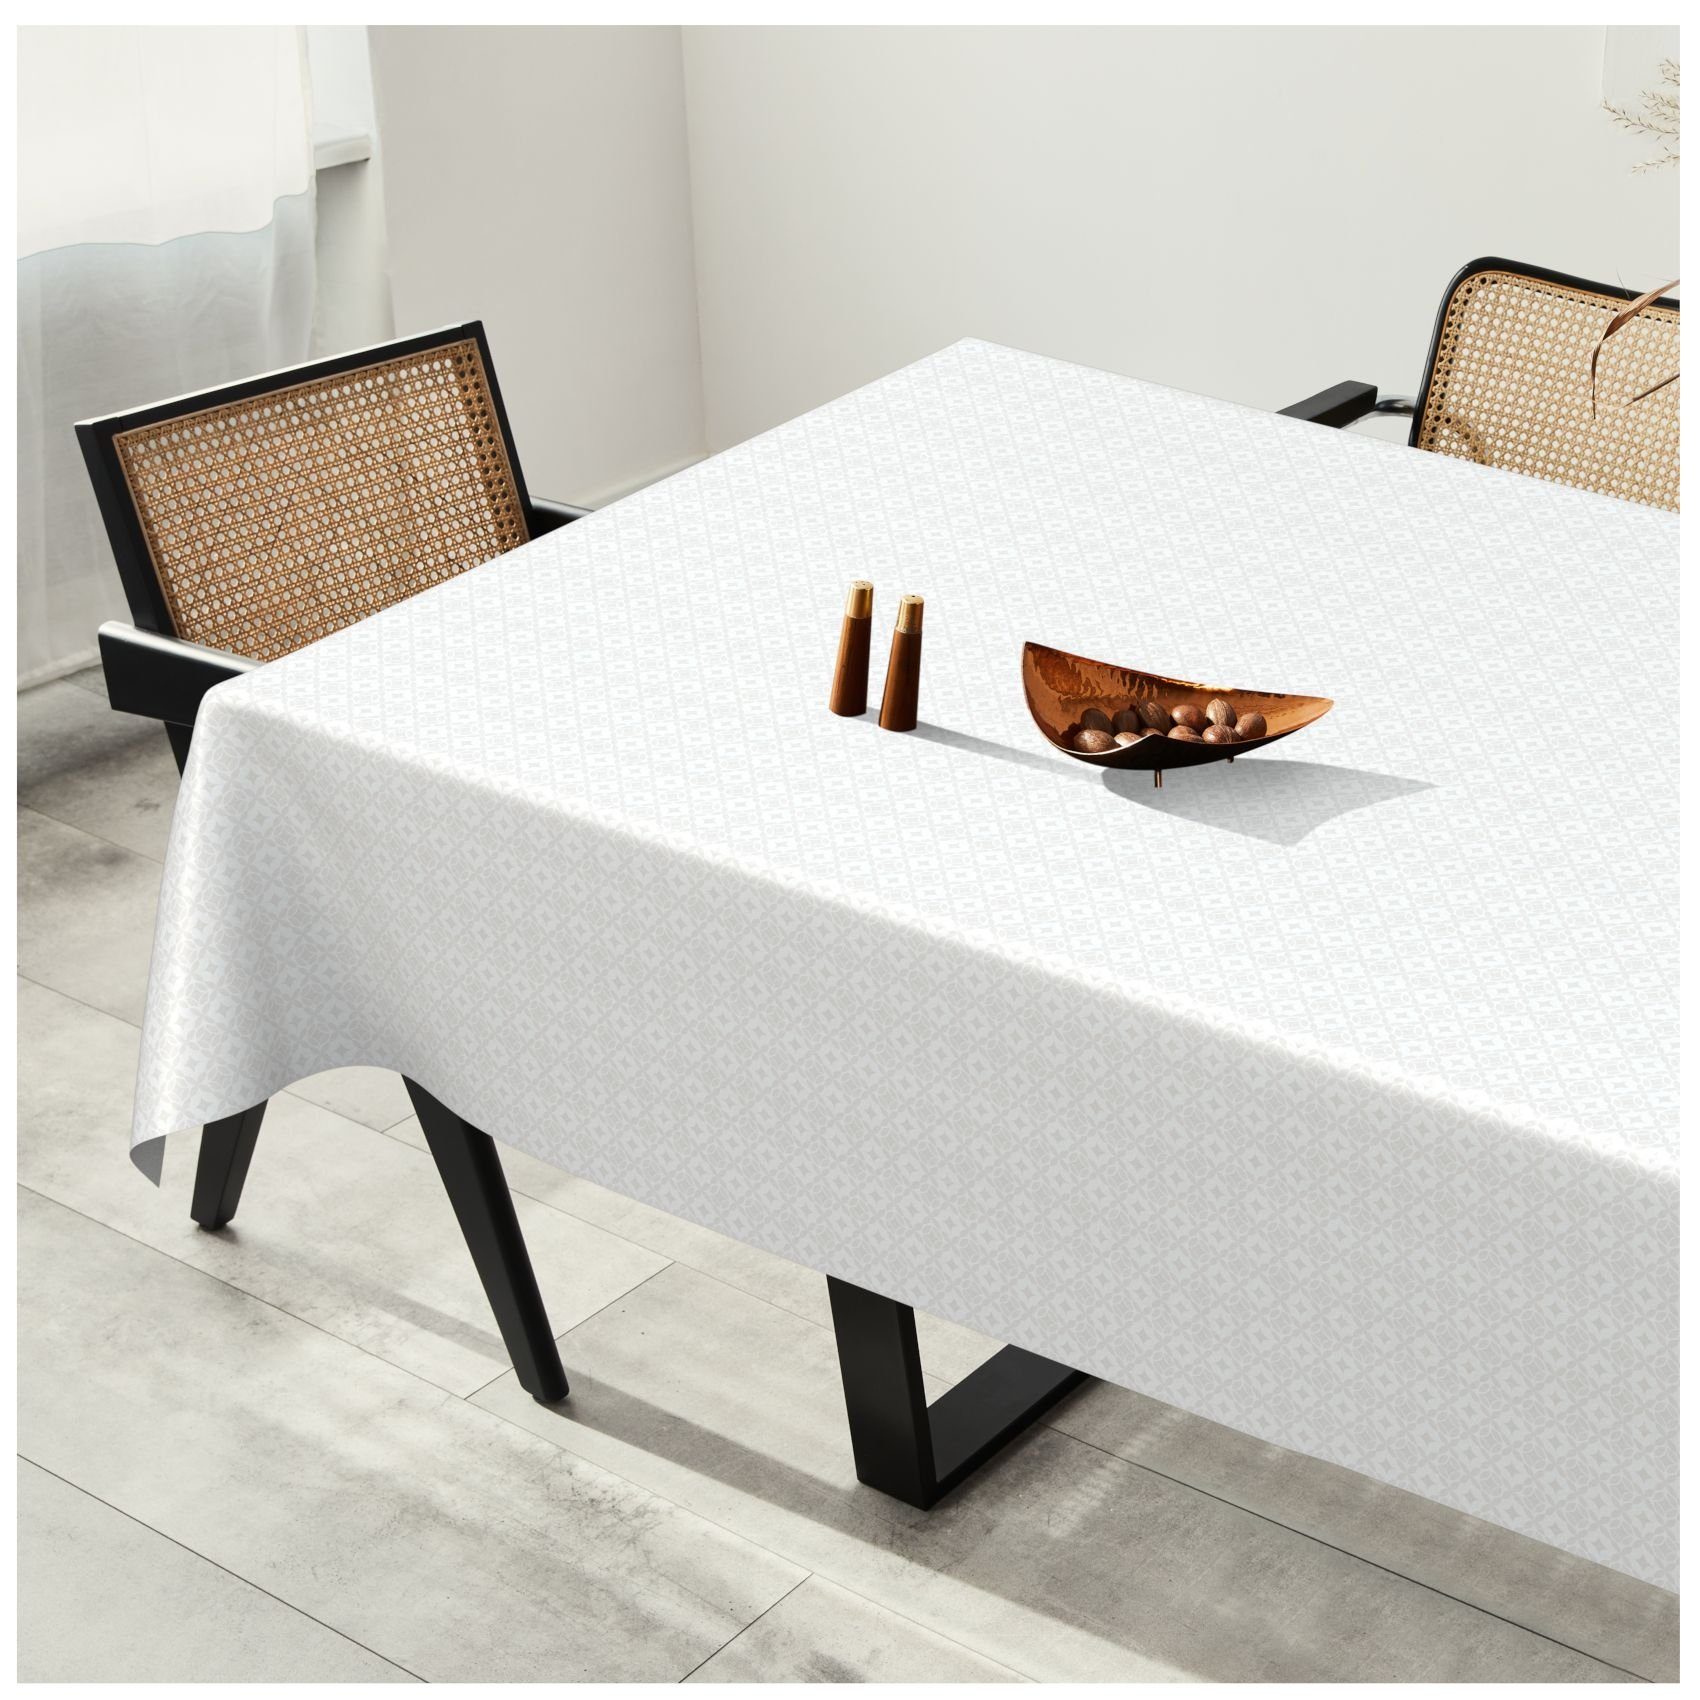 ANRO Tischdecke Tischdecke Wachstuch Glatt MIMOSA Weiß Wasserabweisend, Einfarbig Robust